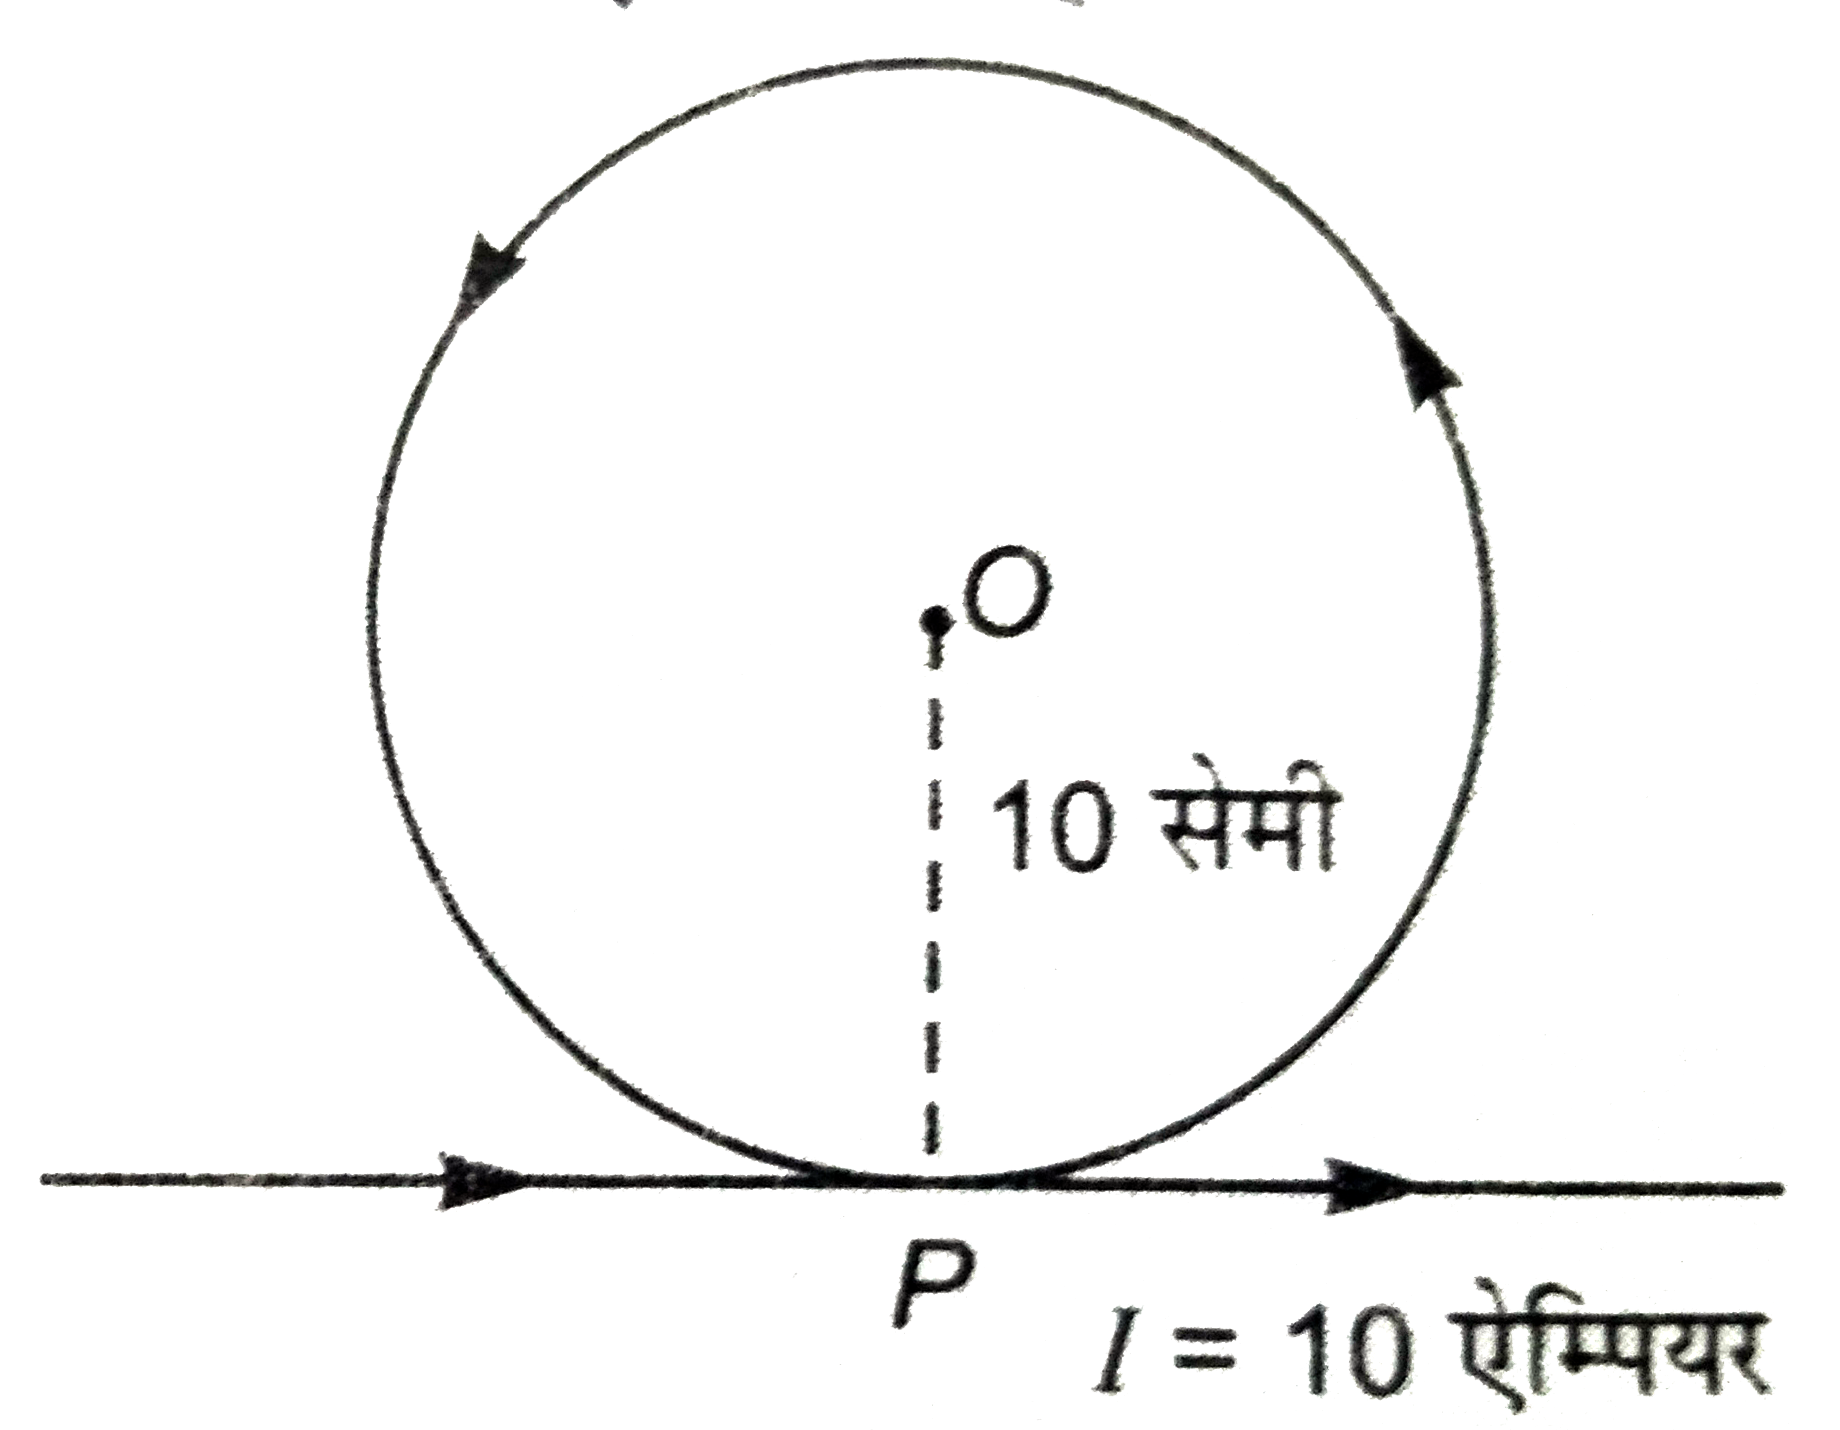 एक लम्बे तार को चित्र कि तरह मोड़ा गया हैं। यदि तार के वृत्तीय लूप के त्रिज्या 10 सेमी तथा तार में बहने वाली धारा का मान 10  एम्पेयर हो तो वृत्तीय भाग के केंद्र O  पर उत्पन्न चुंबकीय क्षेत्र कि तीव्रता ज्ञात कीजिये। बिंदु p पर तार स्पर्श नहीं करते।